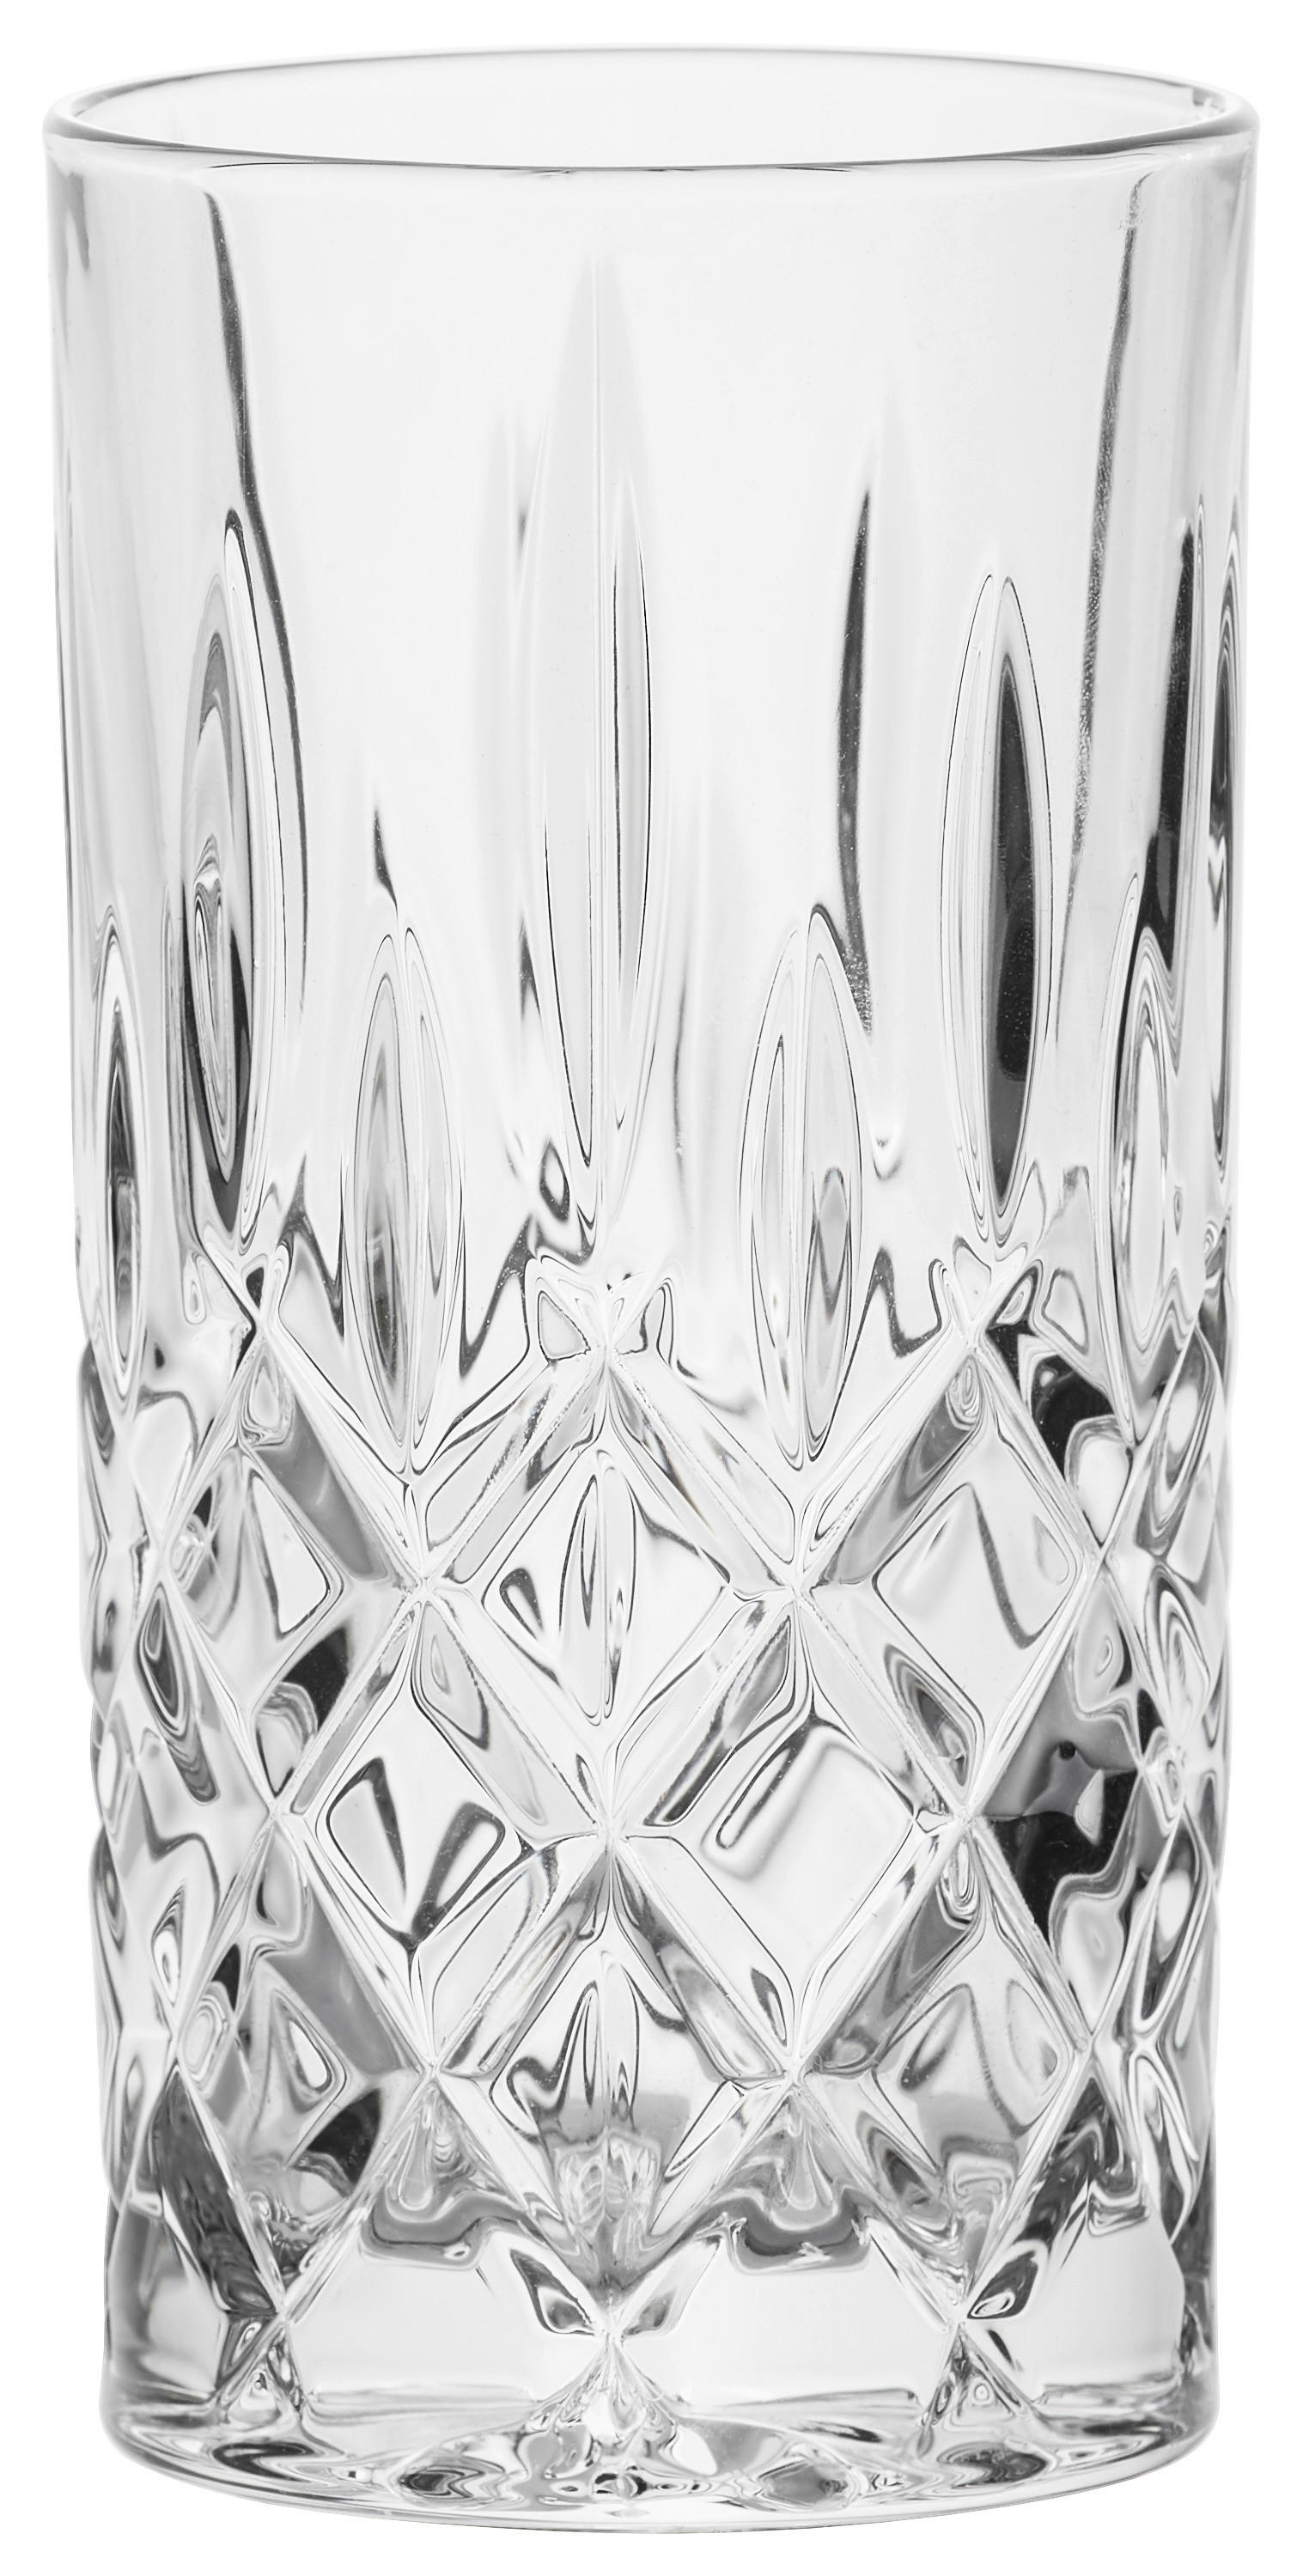 GLÄSERSET Noblesse  6-teilig  - Klar, LIFESTYLE, Glas (7,7/14,8cm) - Nachtmann